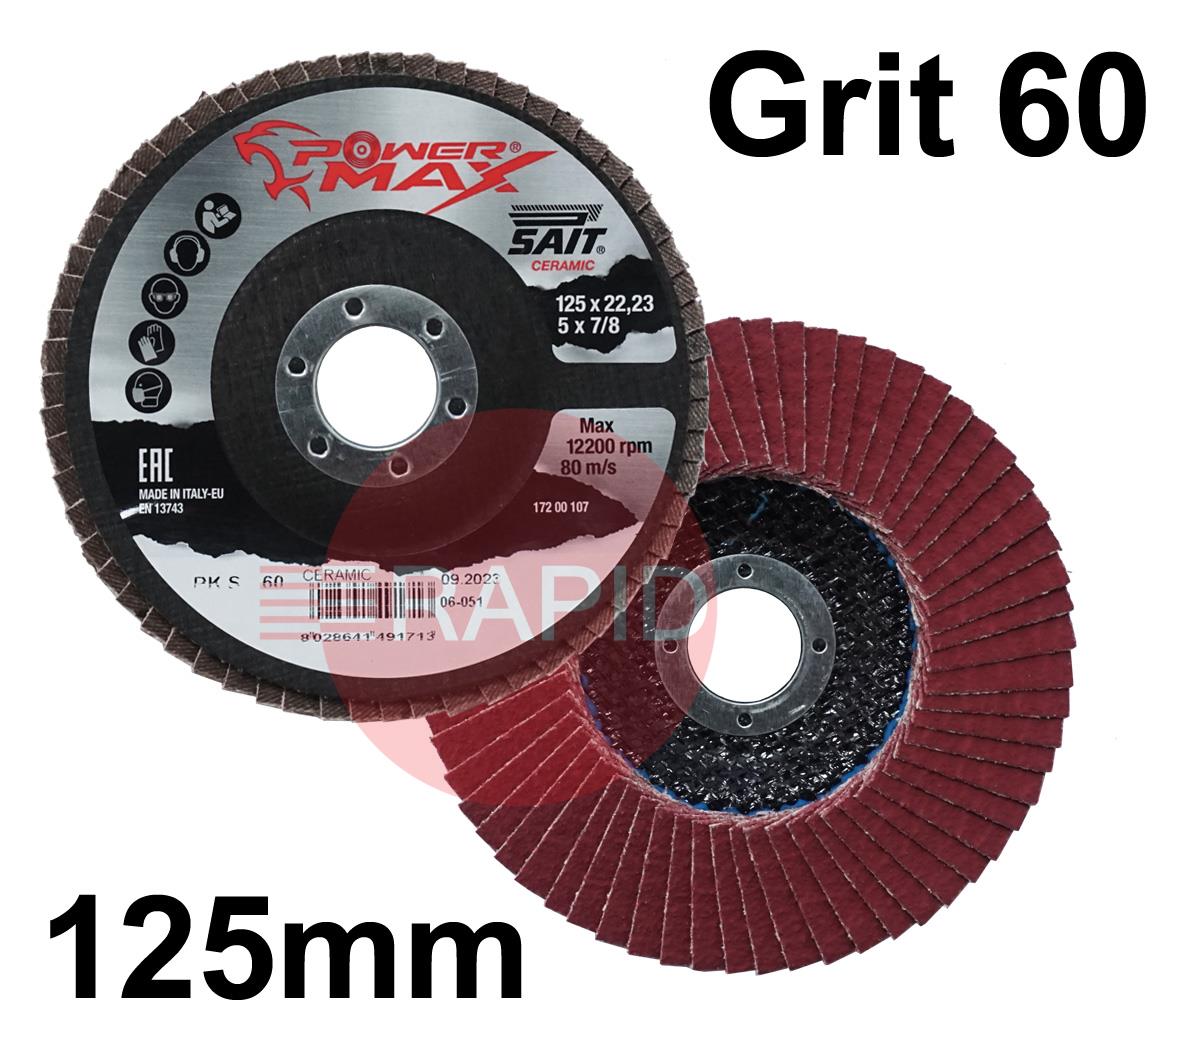 049171  SAIT Powermax-PK S 125mm (5) Ceramic Flap Disc - Grit 60